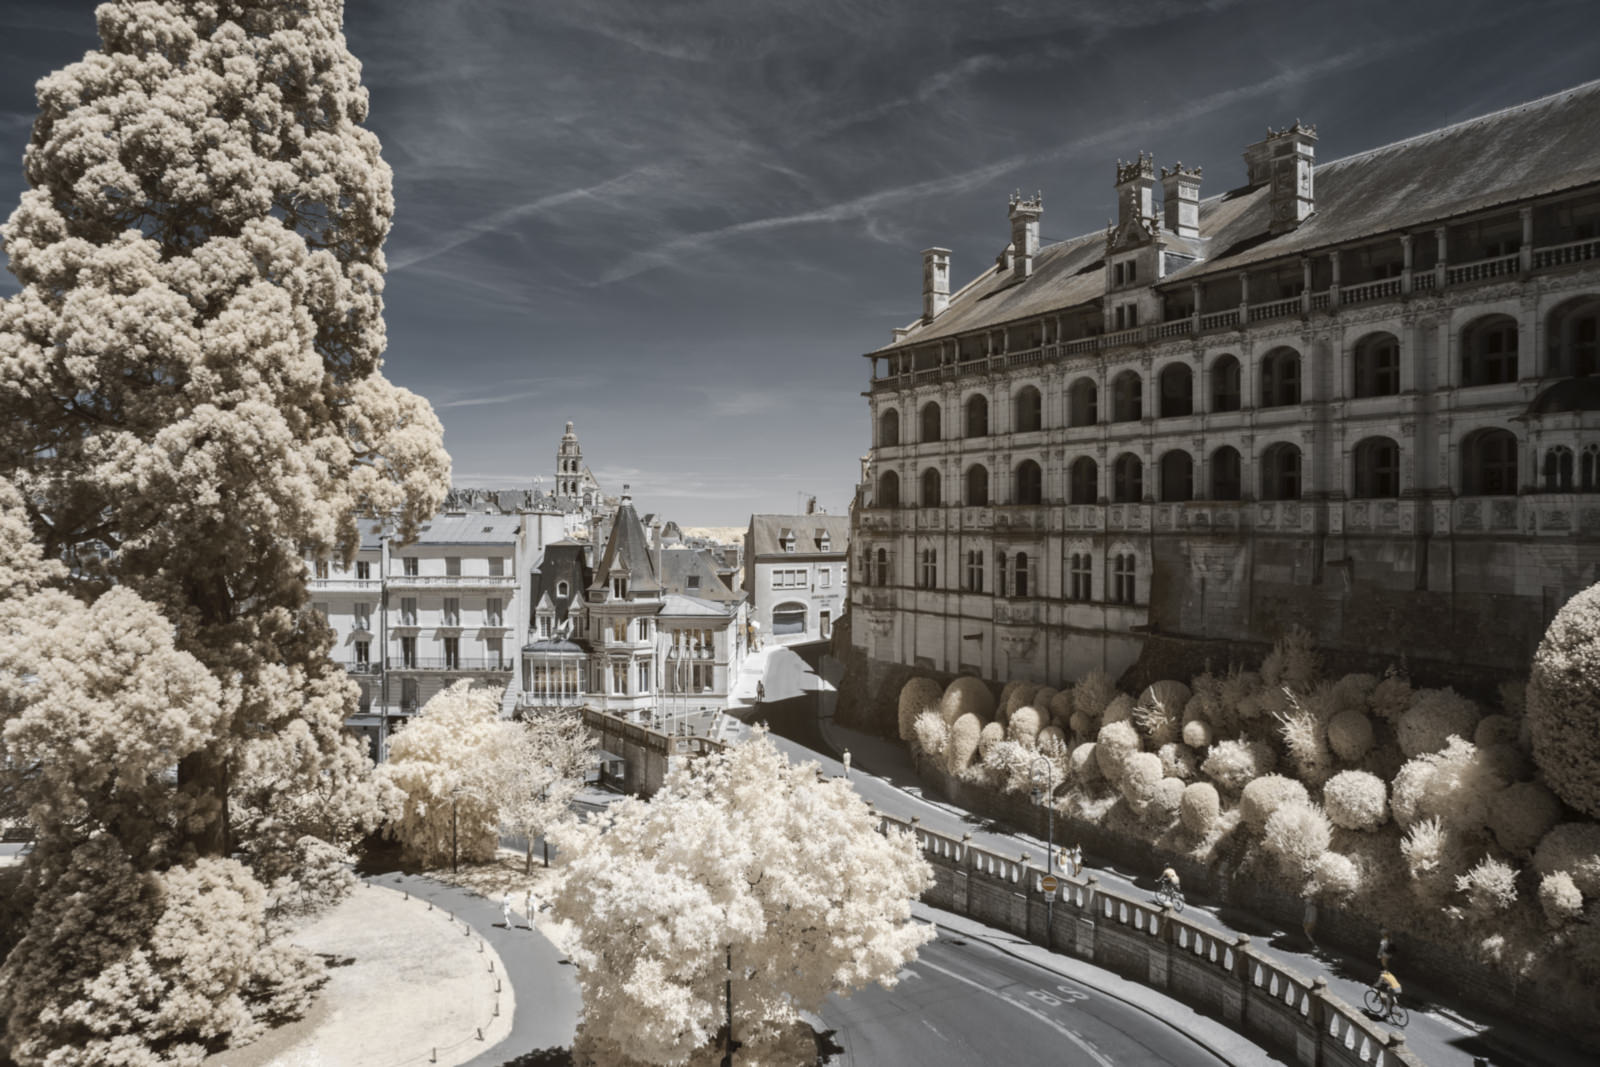 Bộ ảnh cung điện thần tiên tại Loire Valley với kính lọc hồng ngoại từ NAG Pierre-Louis Ferrer